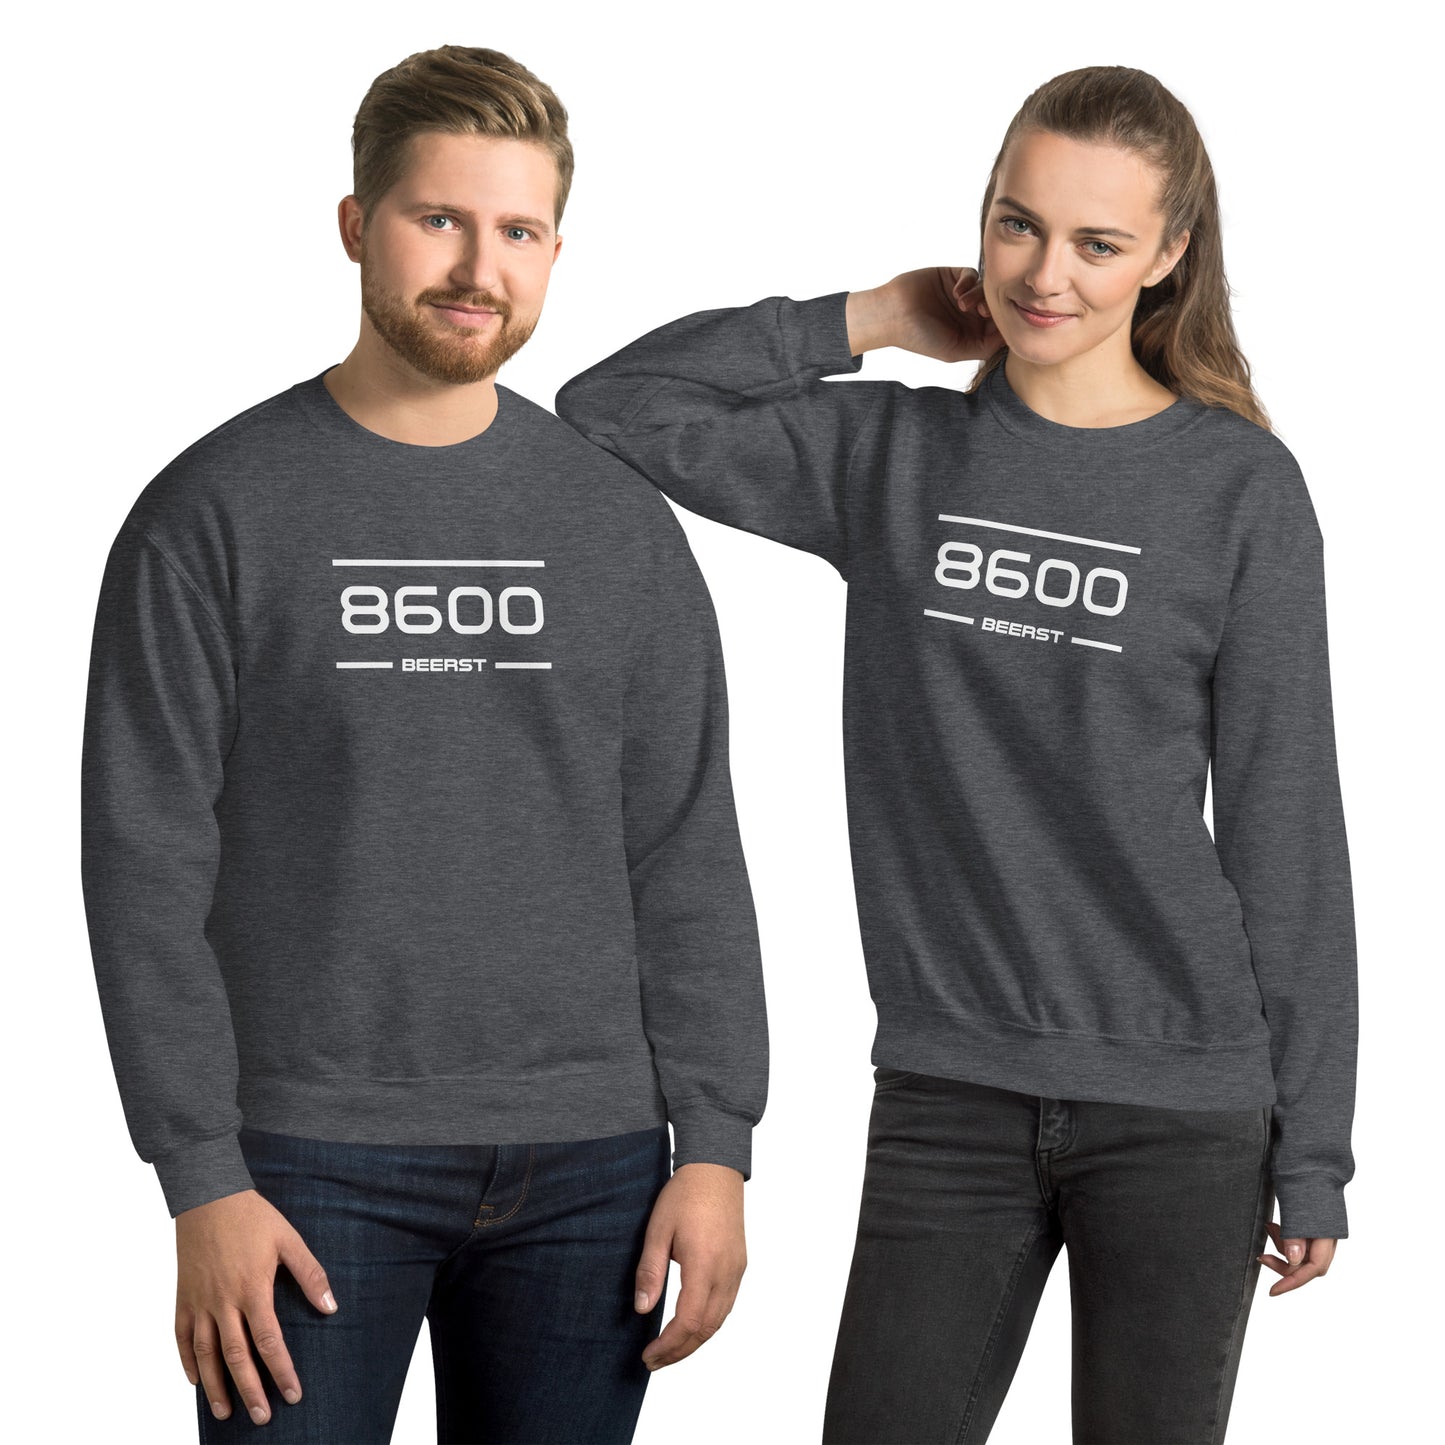 Sweater - 8600 - Beerst (M/V)